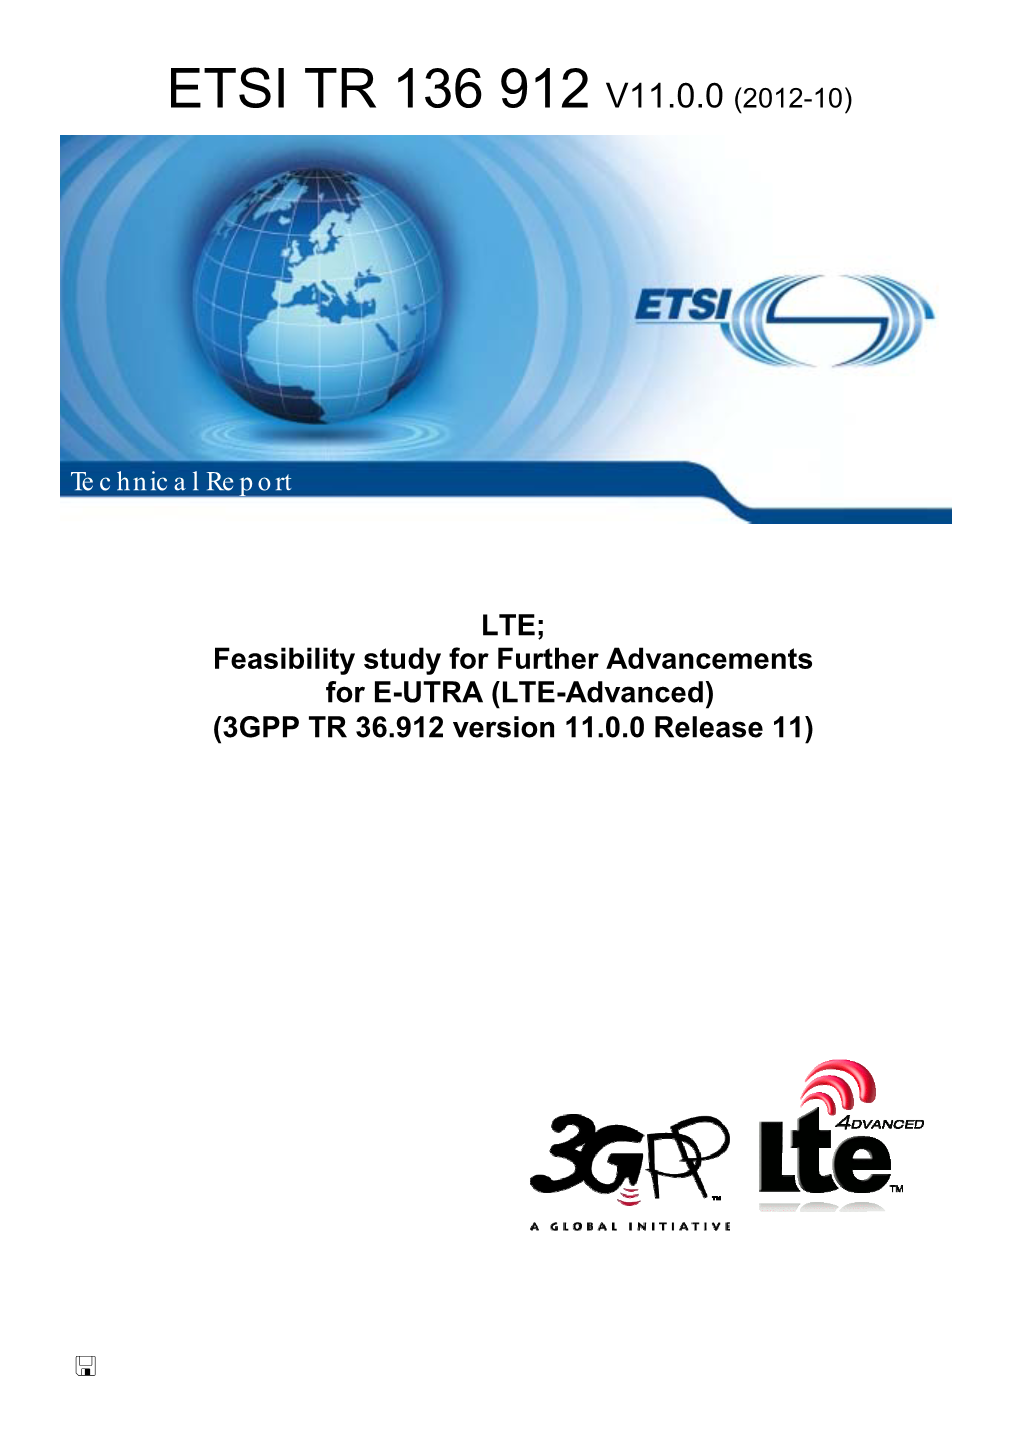 LTE-Advanced) (3GPP TR 36.912 Version 11.0.0 Release 11)